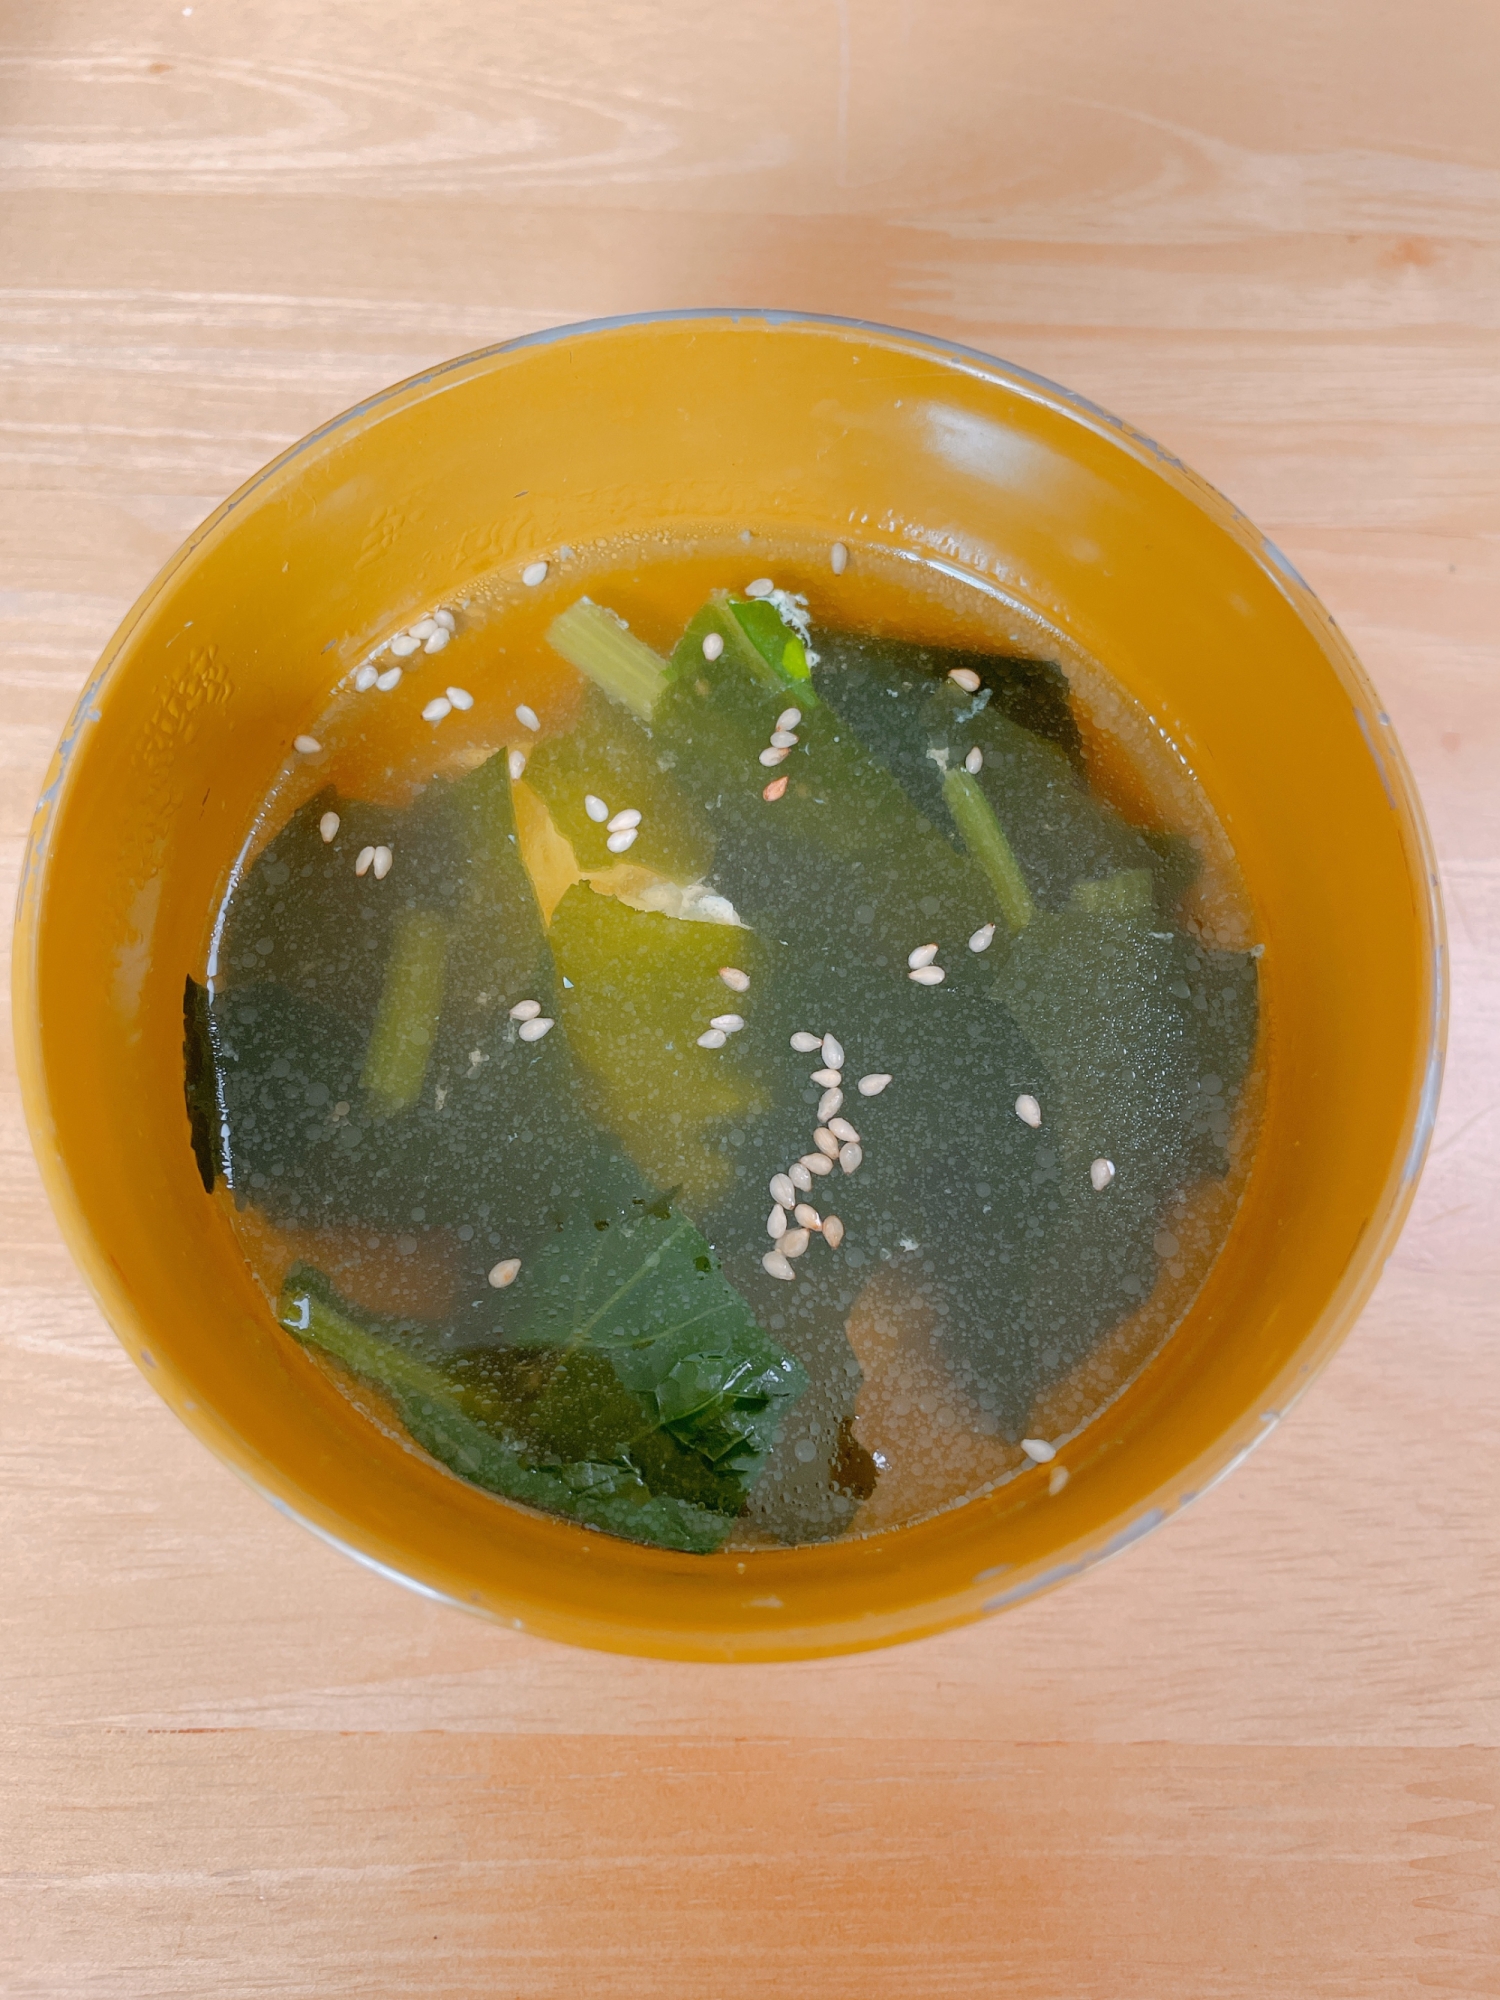 小松菜と卵の中華風スープ